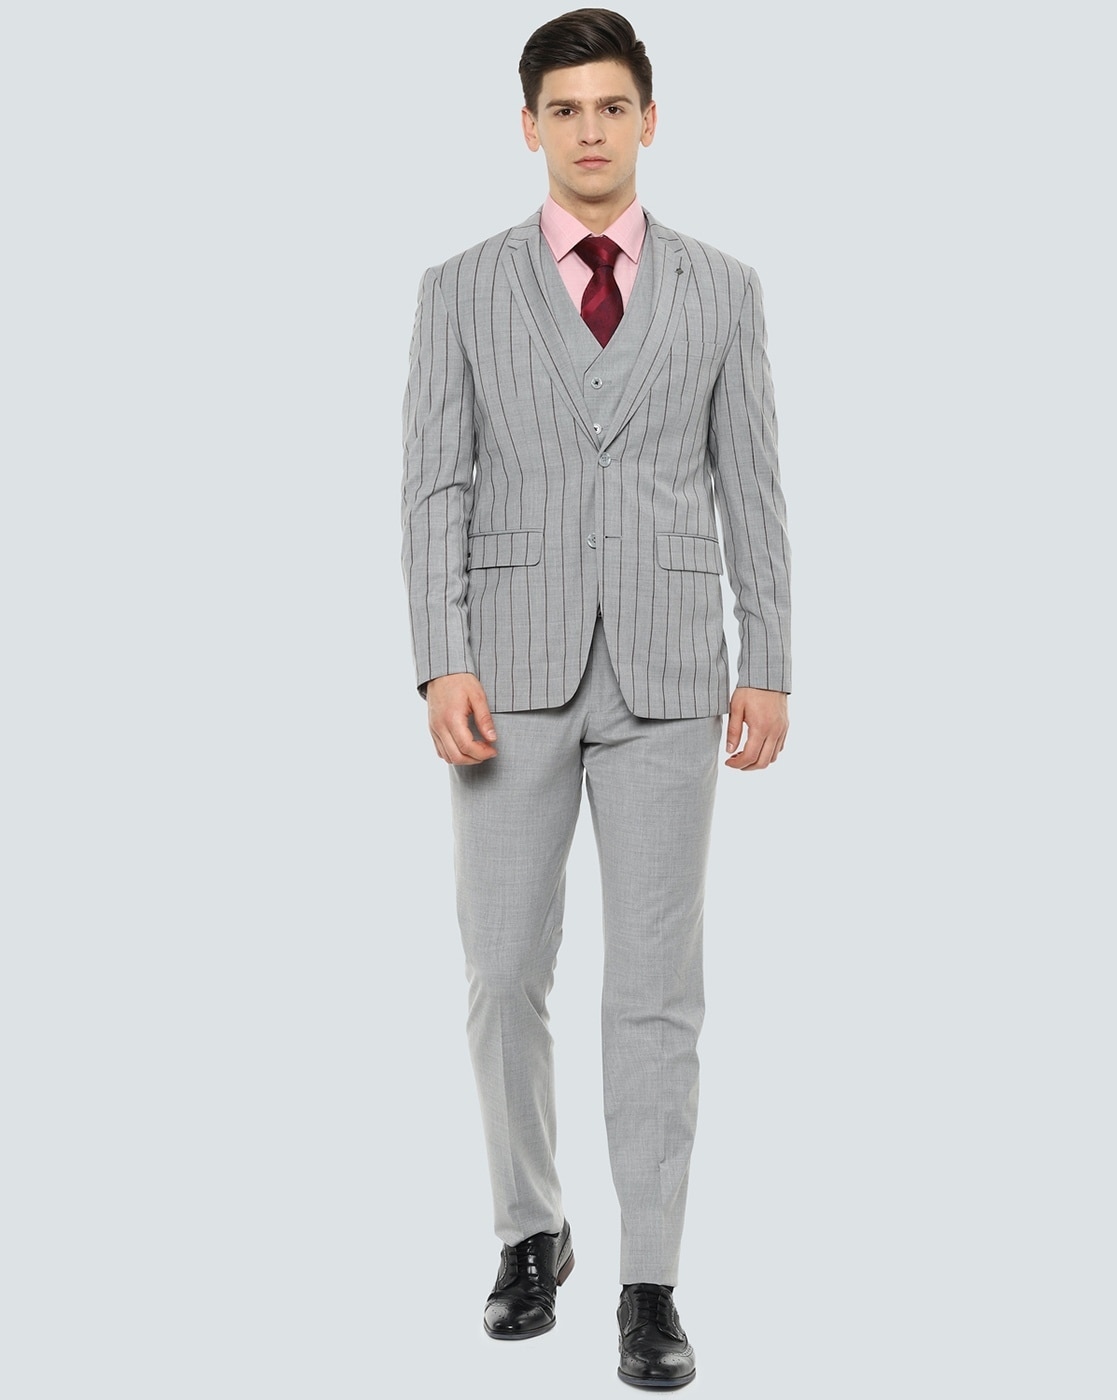 Pierre Cardin Grey Stripe Suit Jacket